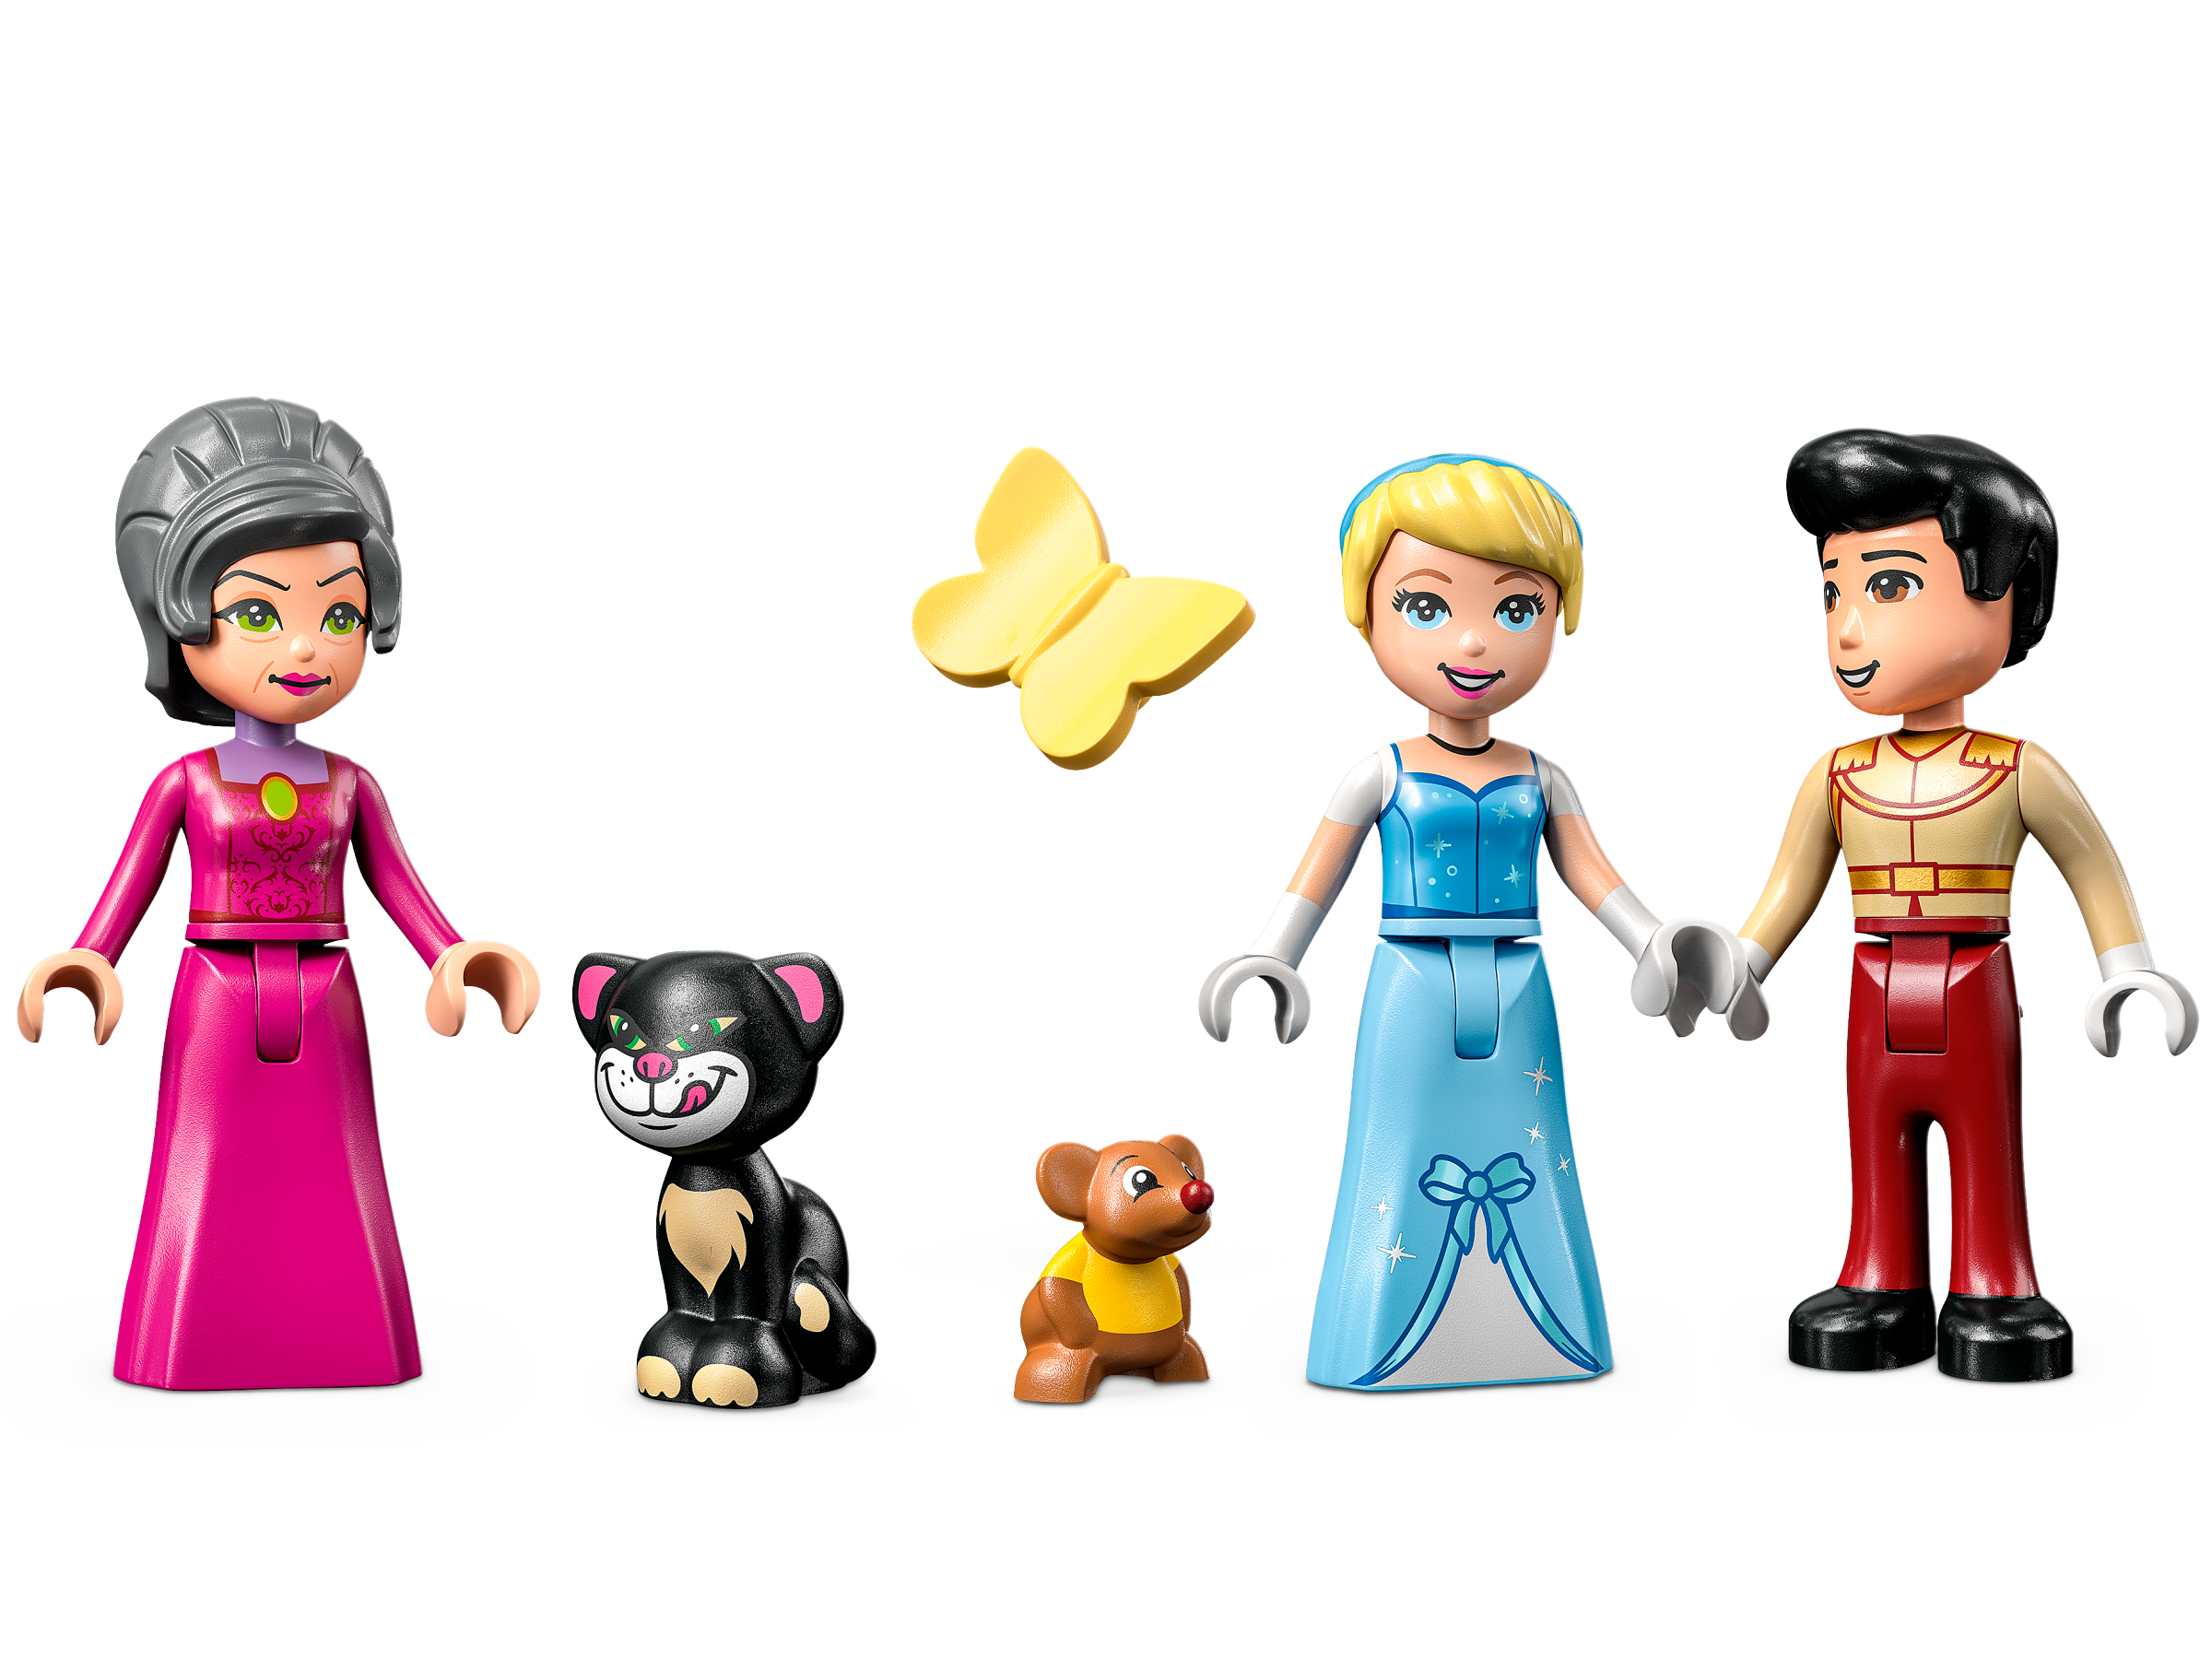 LEGO® - Disney Princess™ 43206 Il castello di Cenerentola e il bel principe  - LEGO® Disney™